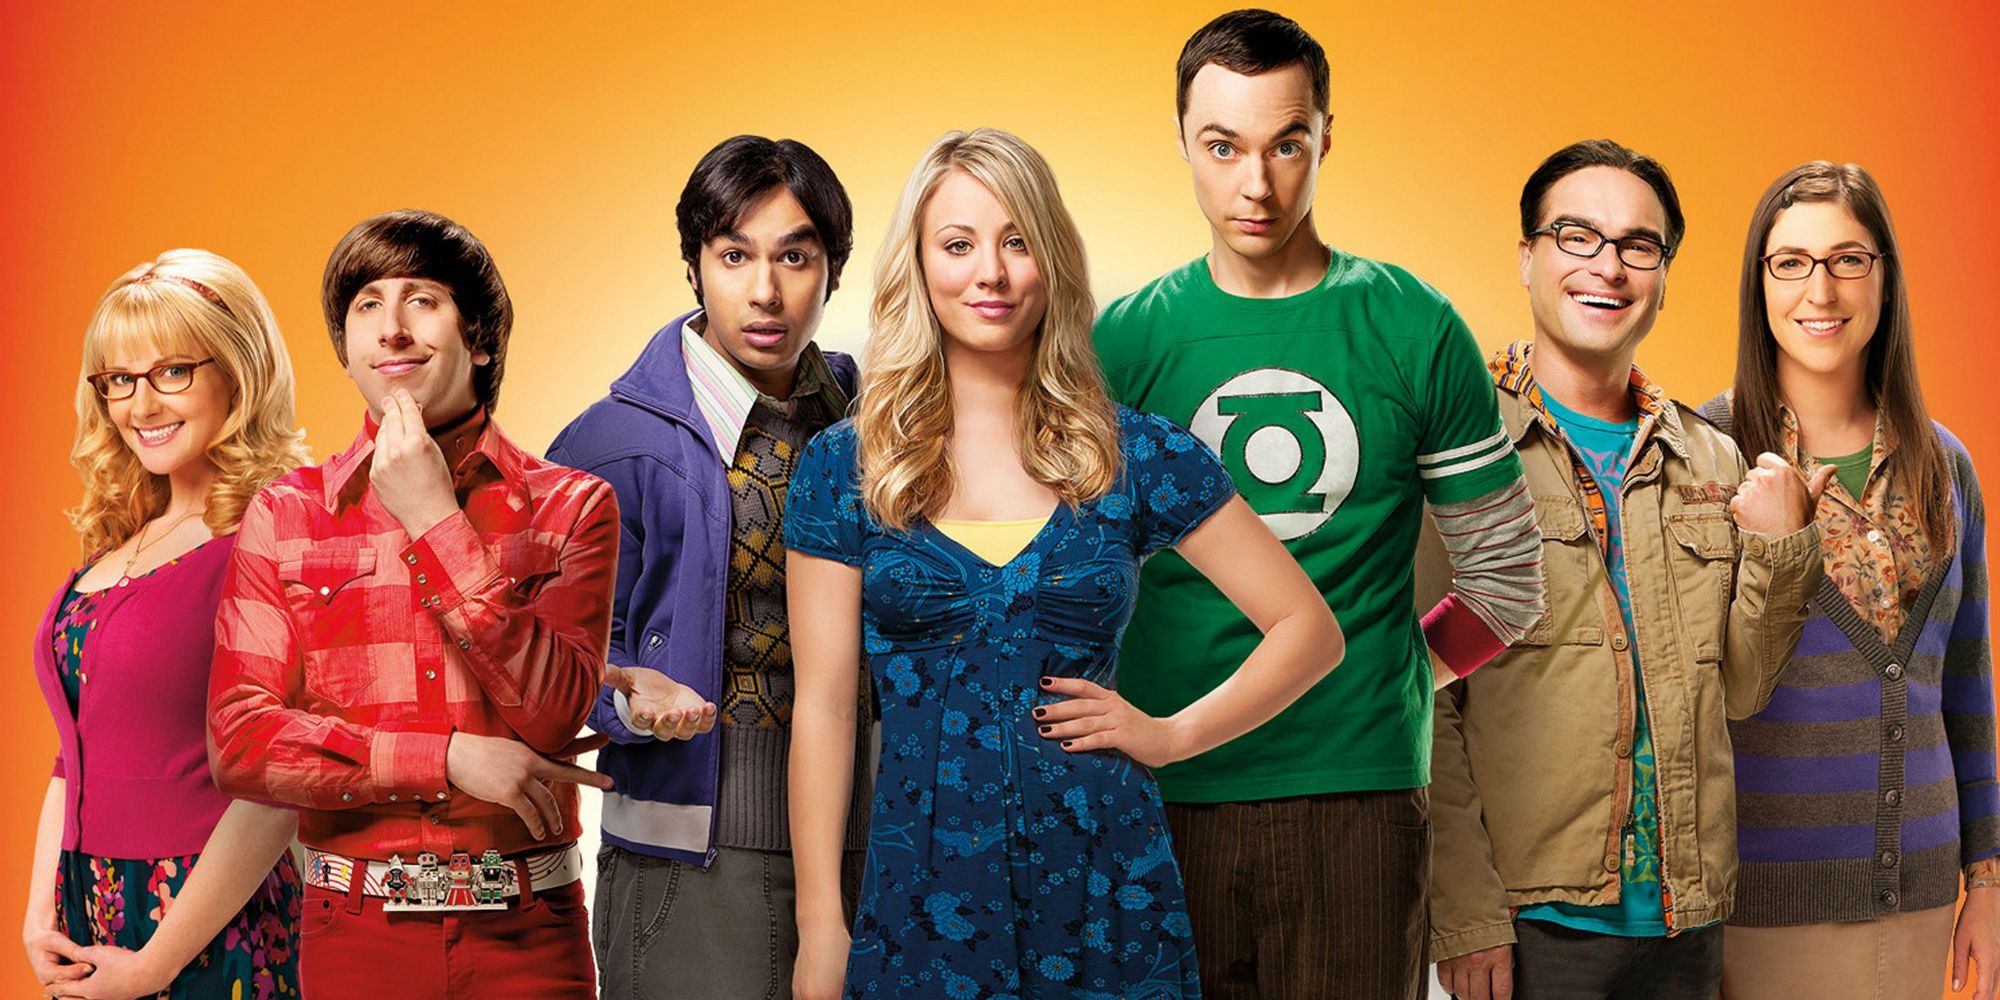  The Big Bang Theory : Movies & TV